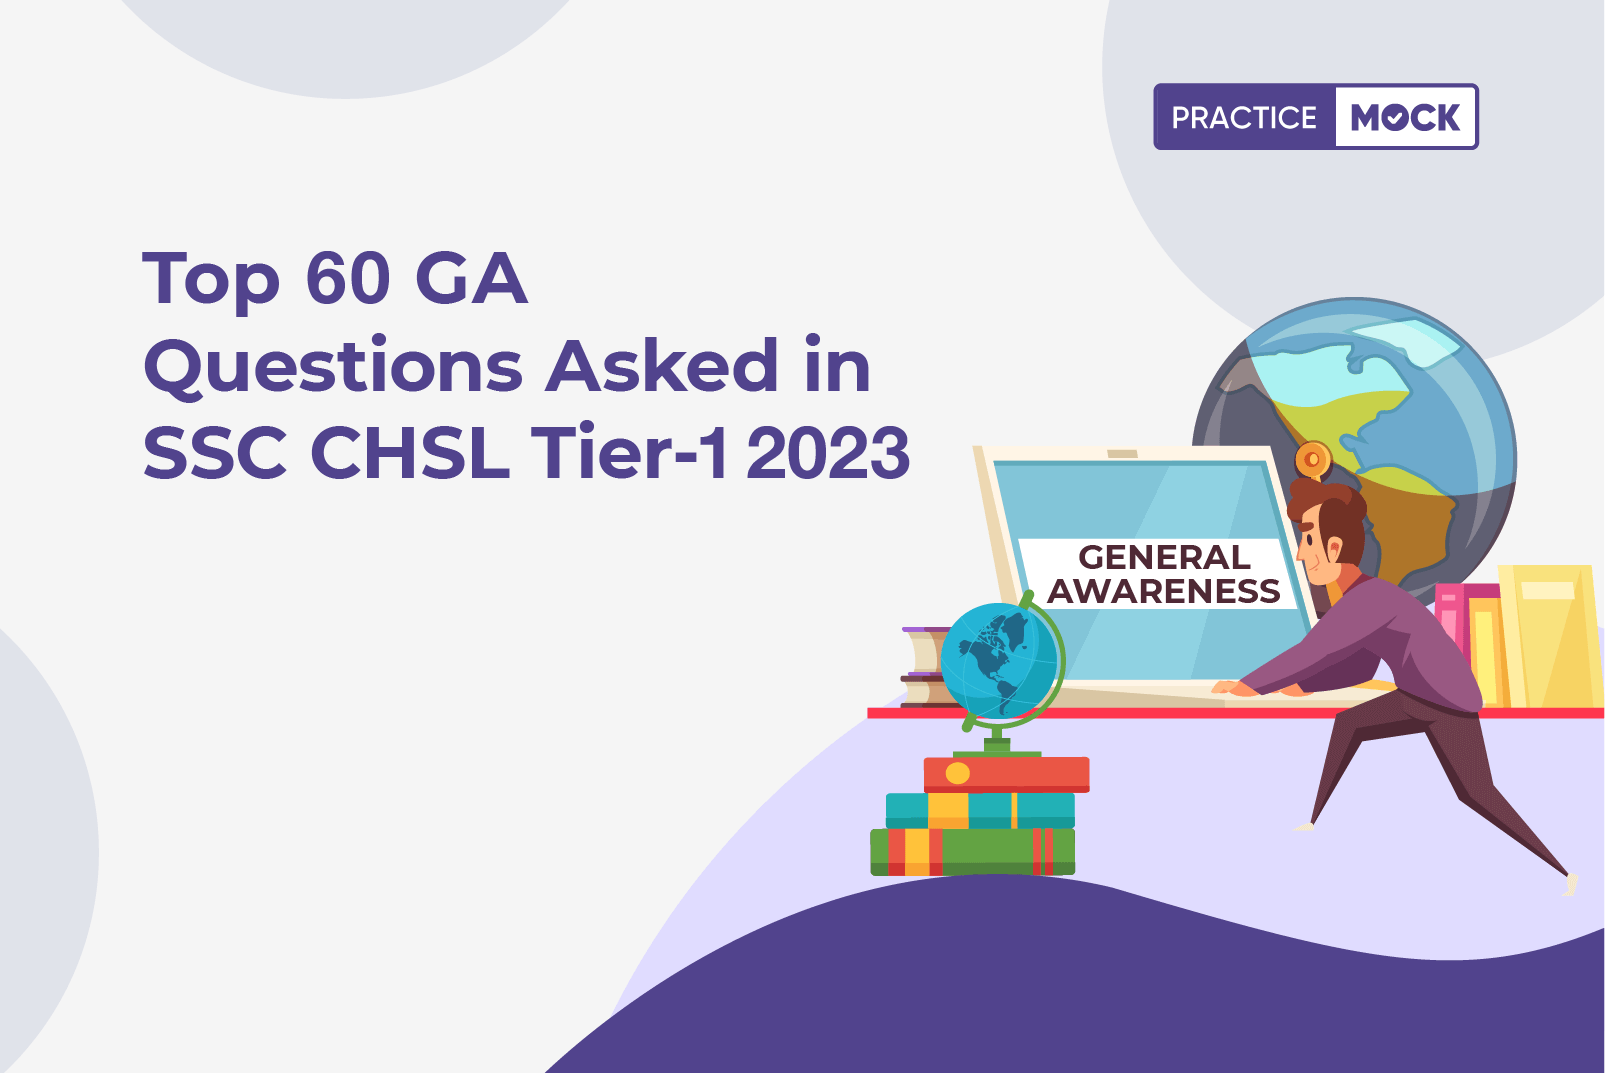 SSC CHSL Tier 1 GA Questions